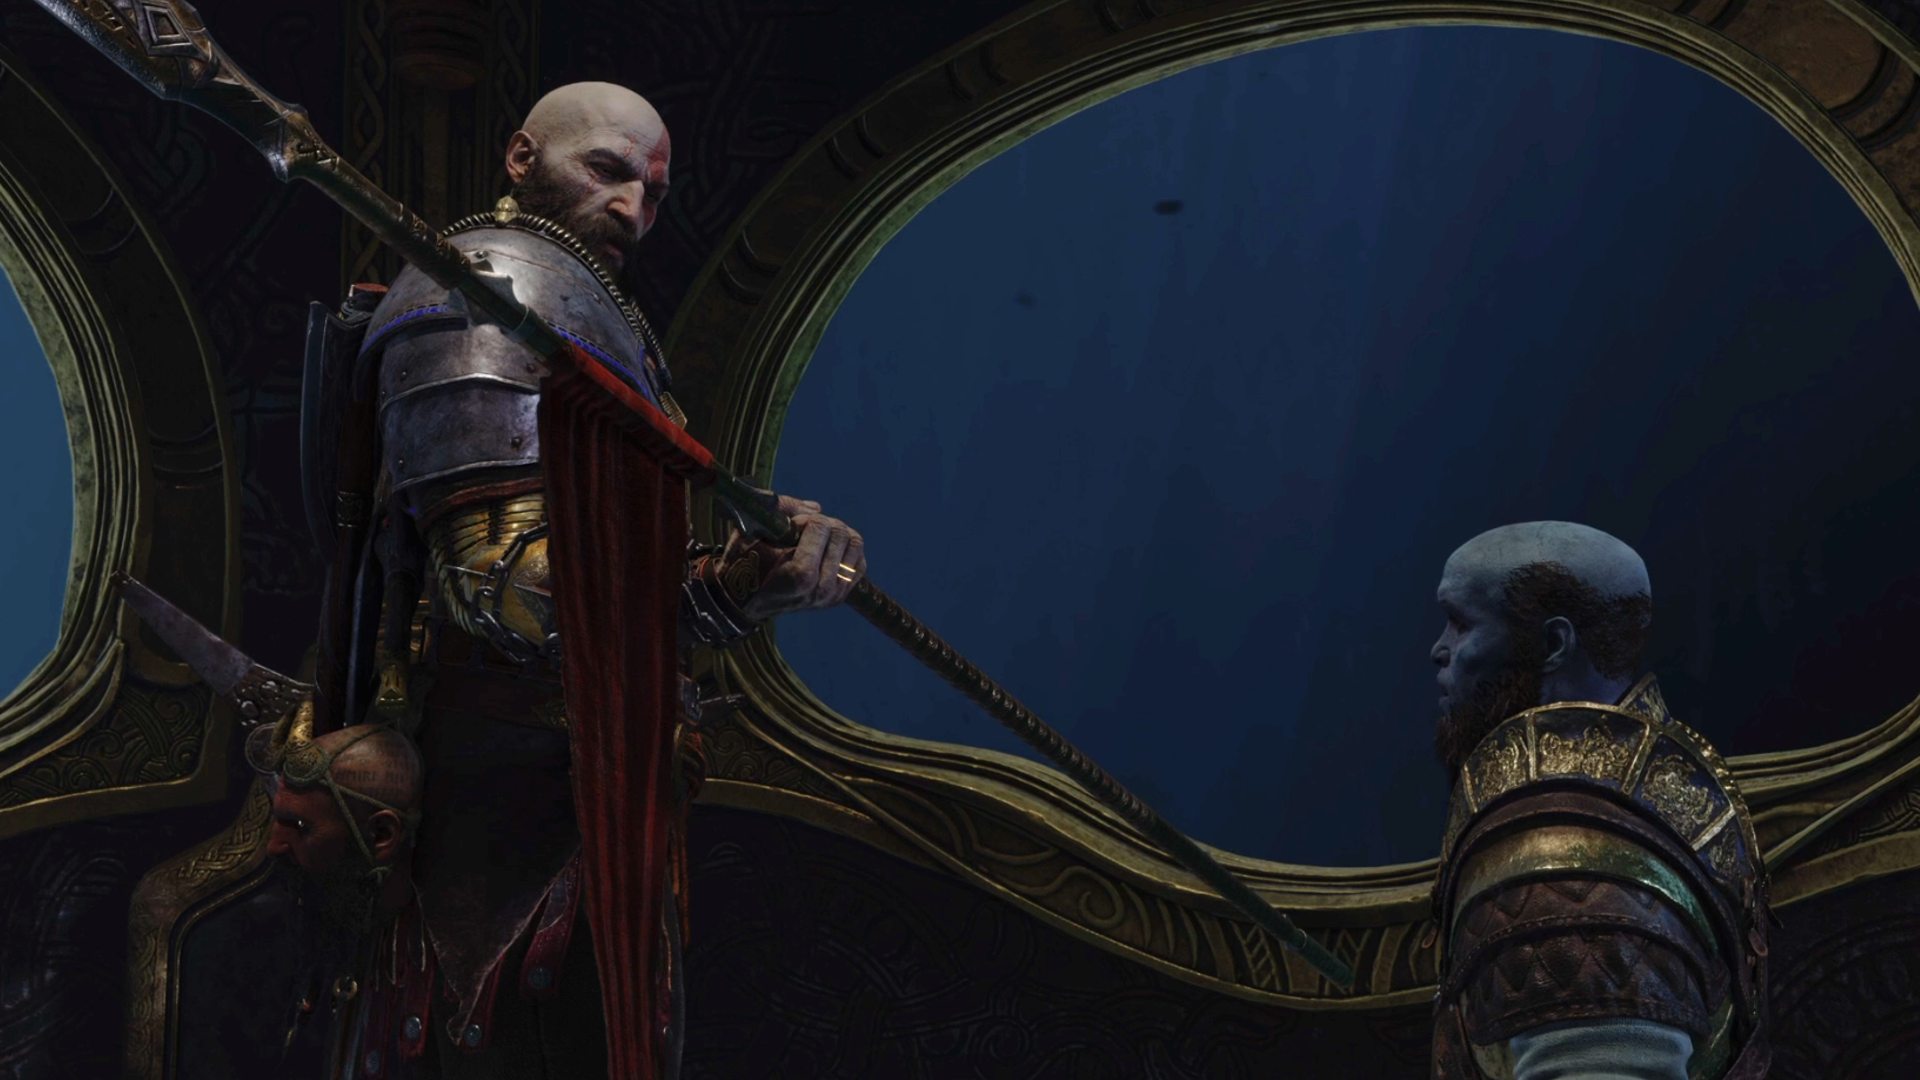 God of War Ragnarok Weapons: Kratos can be seen holding the Draupnir Spear